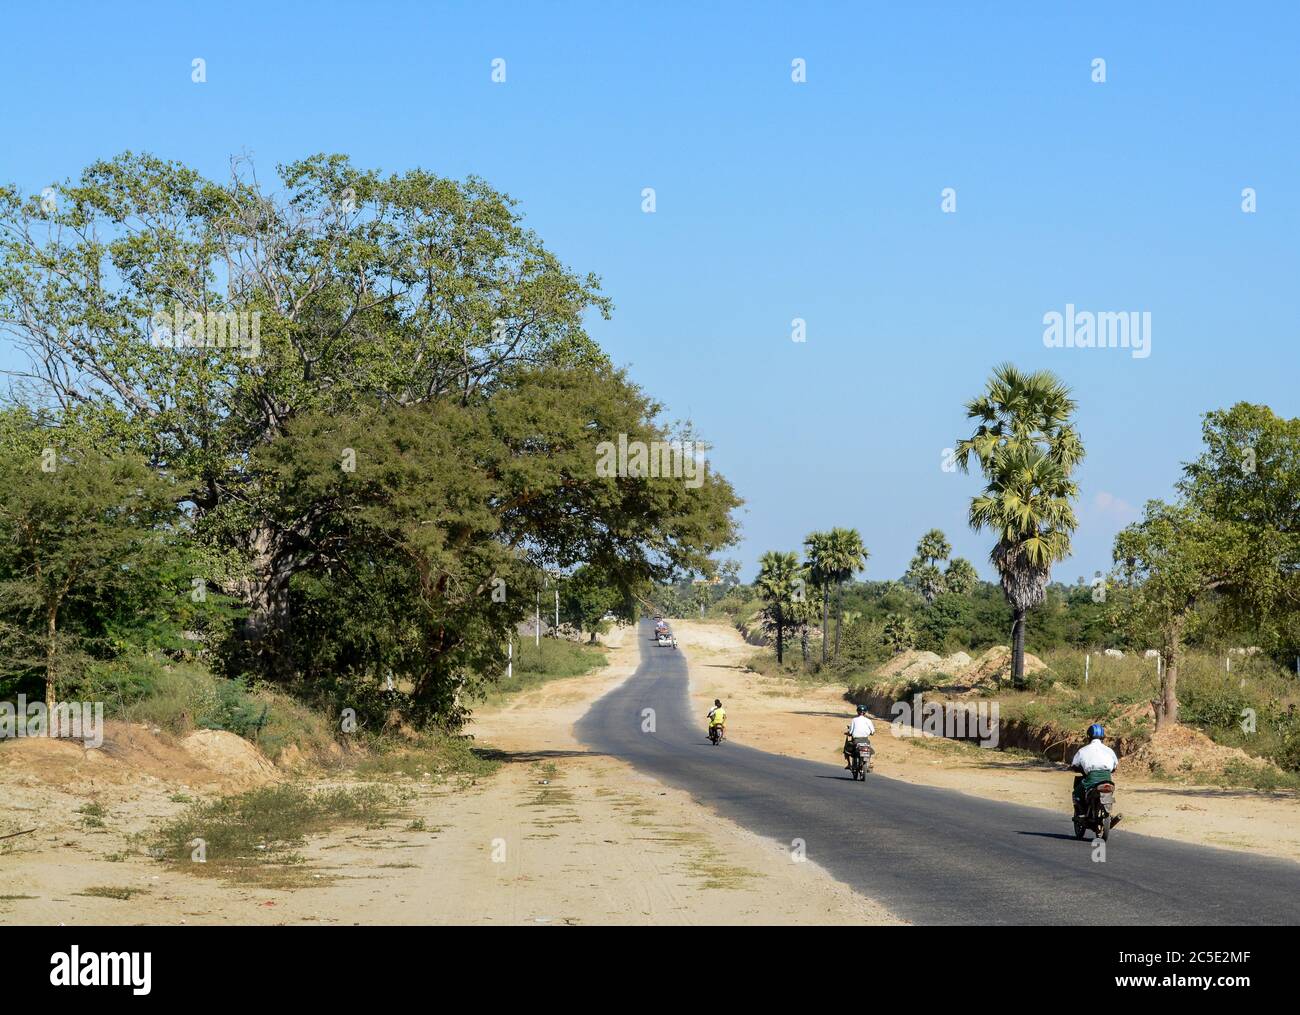 Motorräder auf der Straße auf dem Land in Myanmar, Südostasien. Wildes Land und kleine Straße und Bäume. Stockfoto